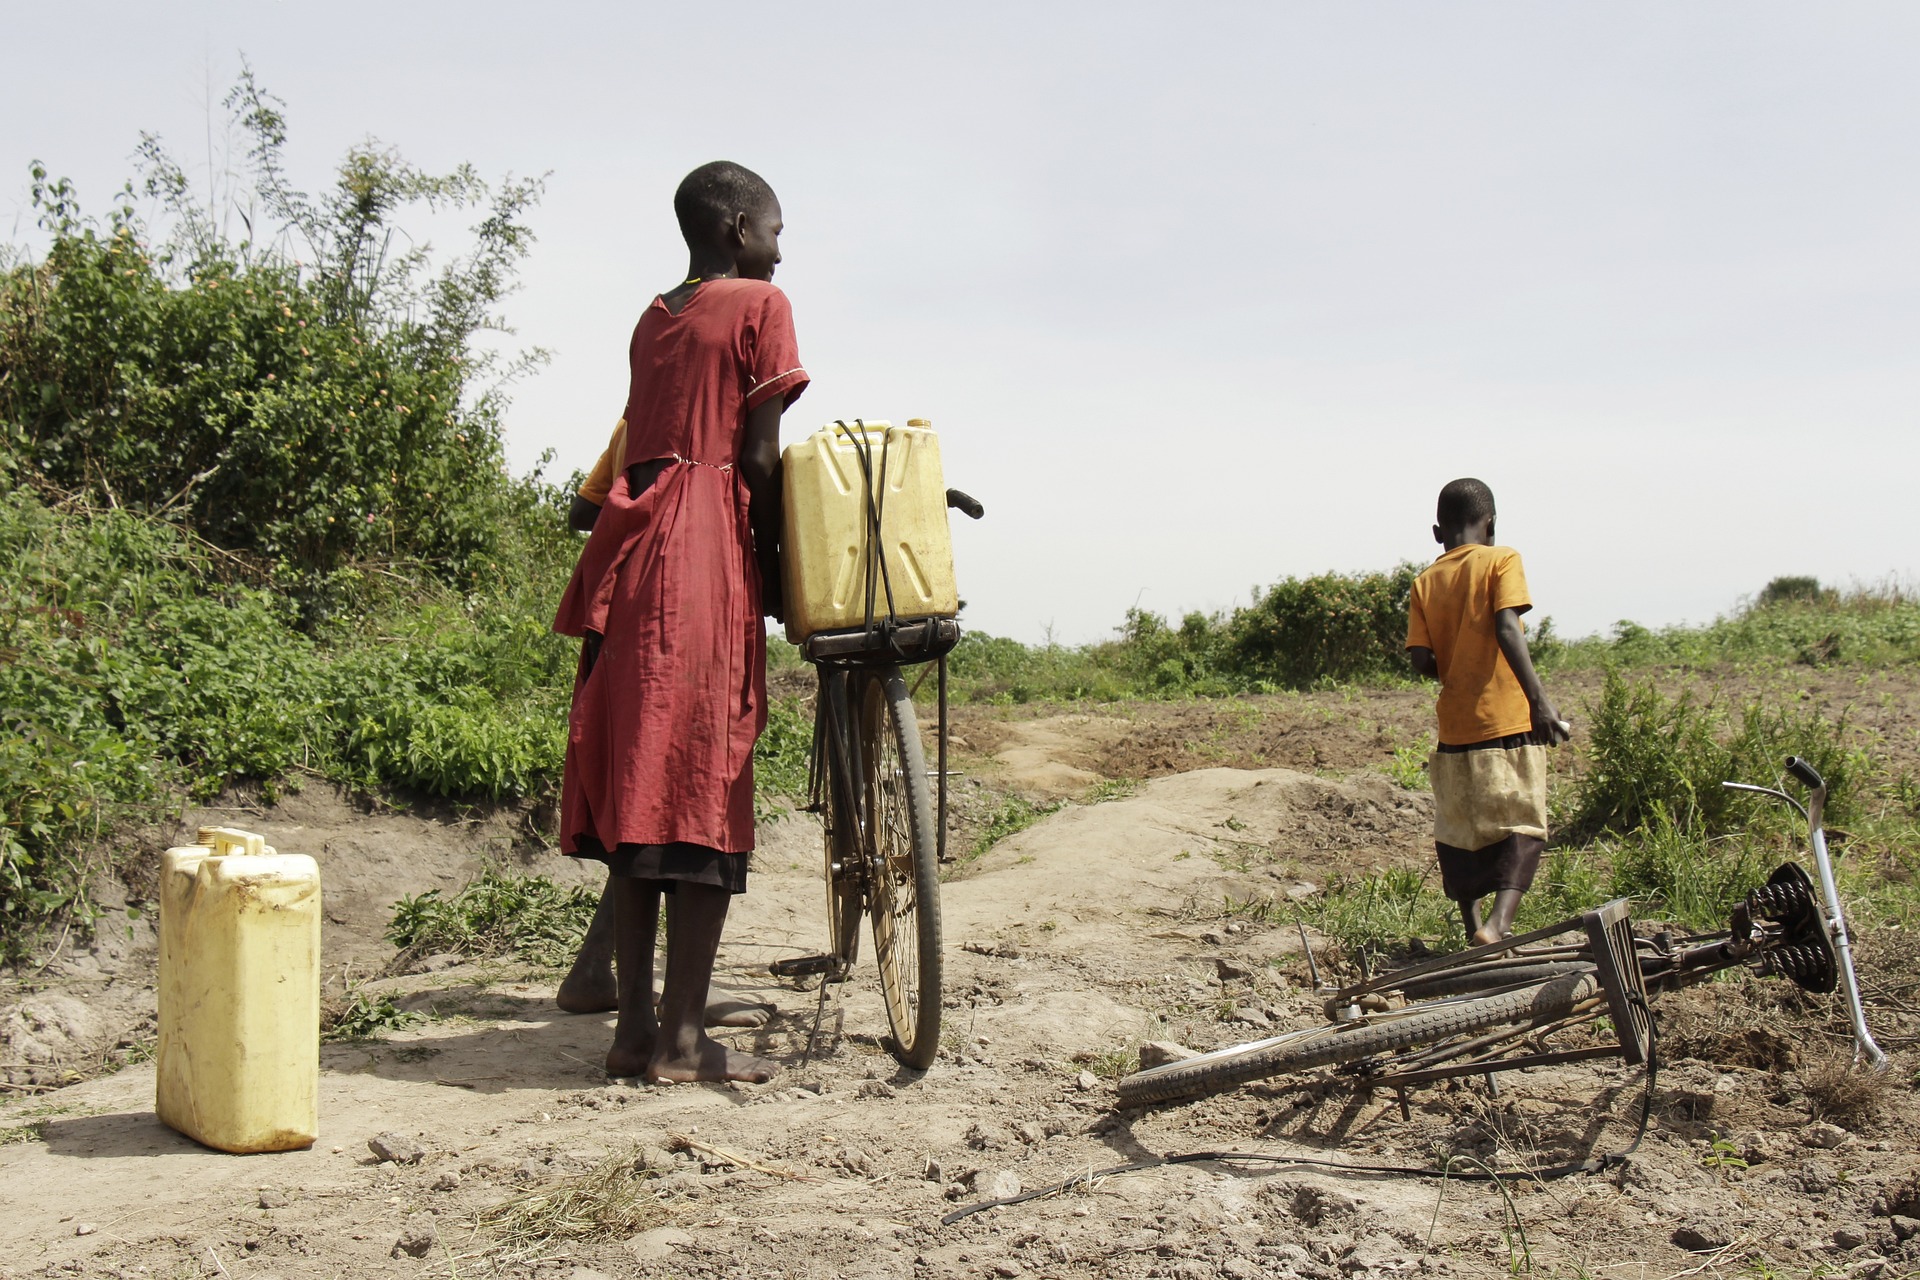 El cambio climático y la sequía dejan a 4,5 millones de personas en situación de inseguridad alimentaria en Kenia